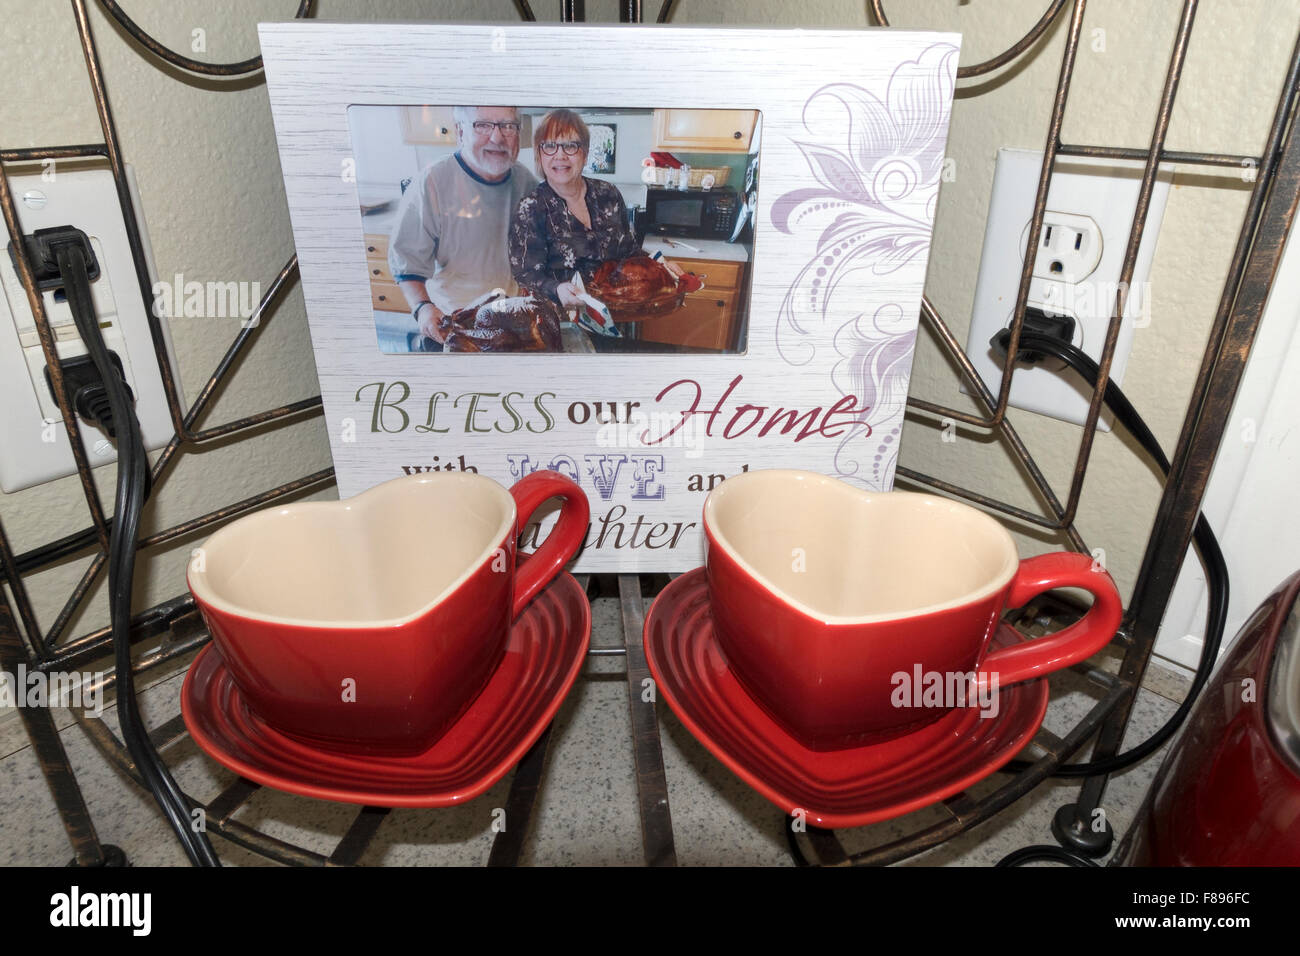 Tasses à café en forme de coeur rouge dans l'affichage d'angle avec une carte photo d'un couple holding dindes rôties. St Paul Minnesota MN USA Banque D'Images